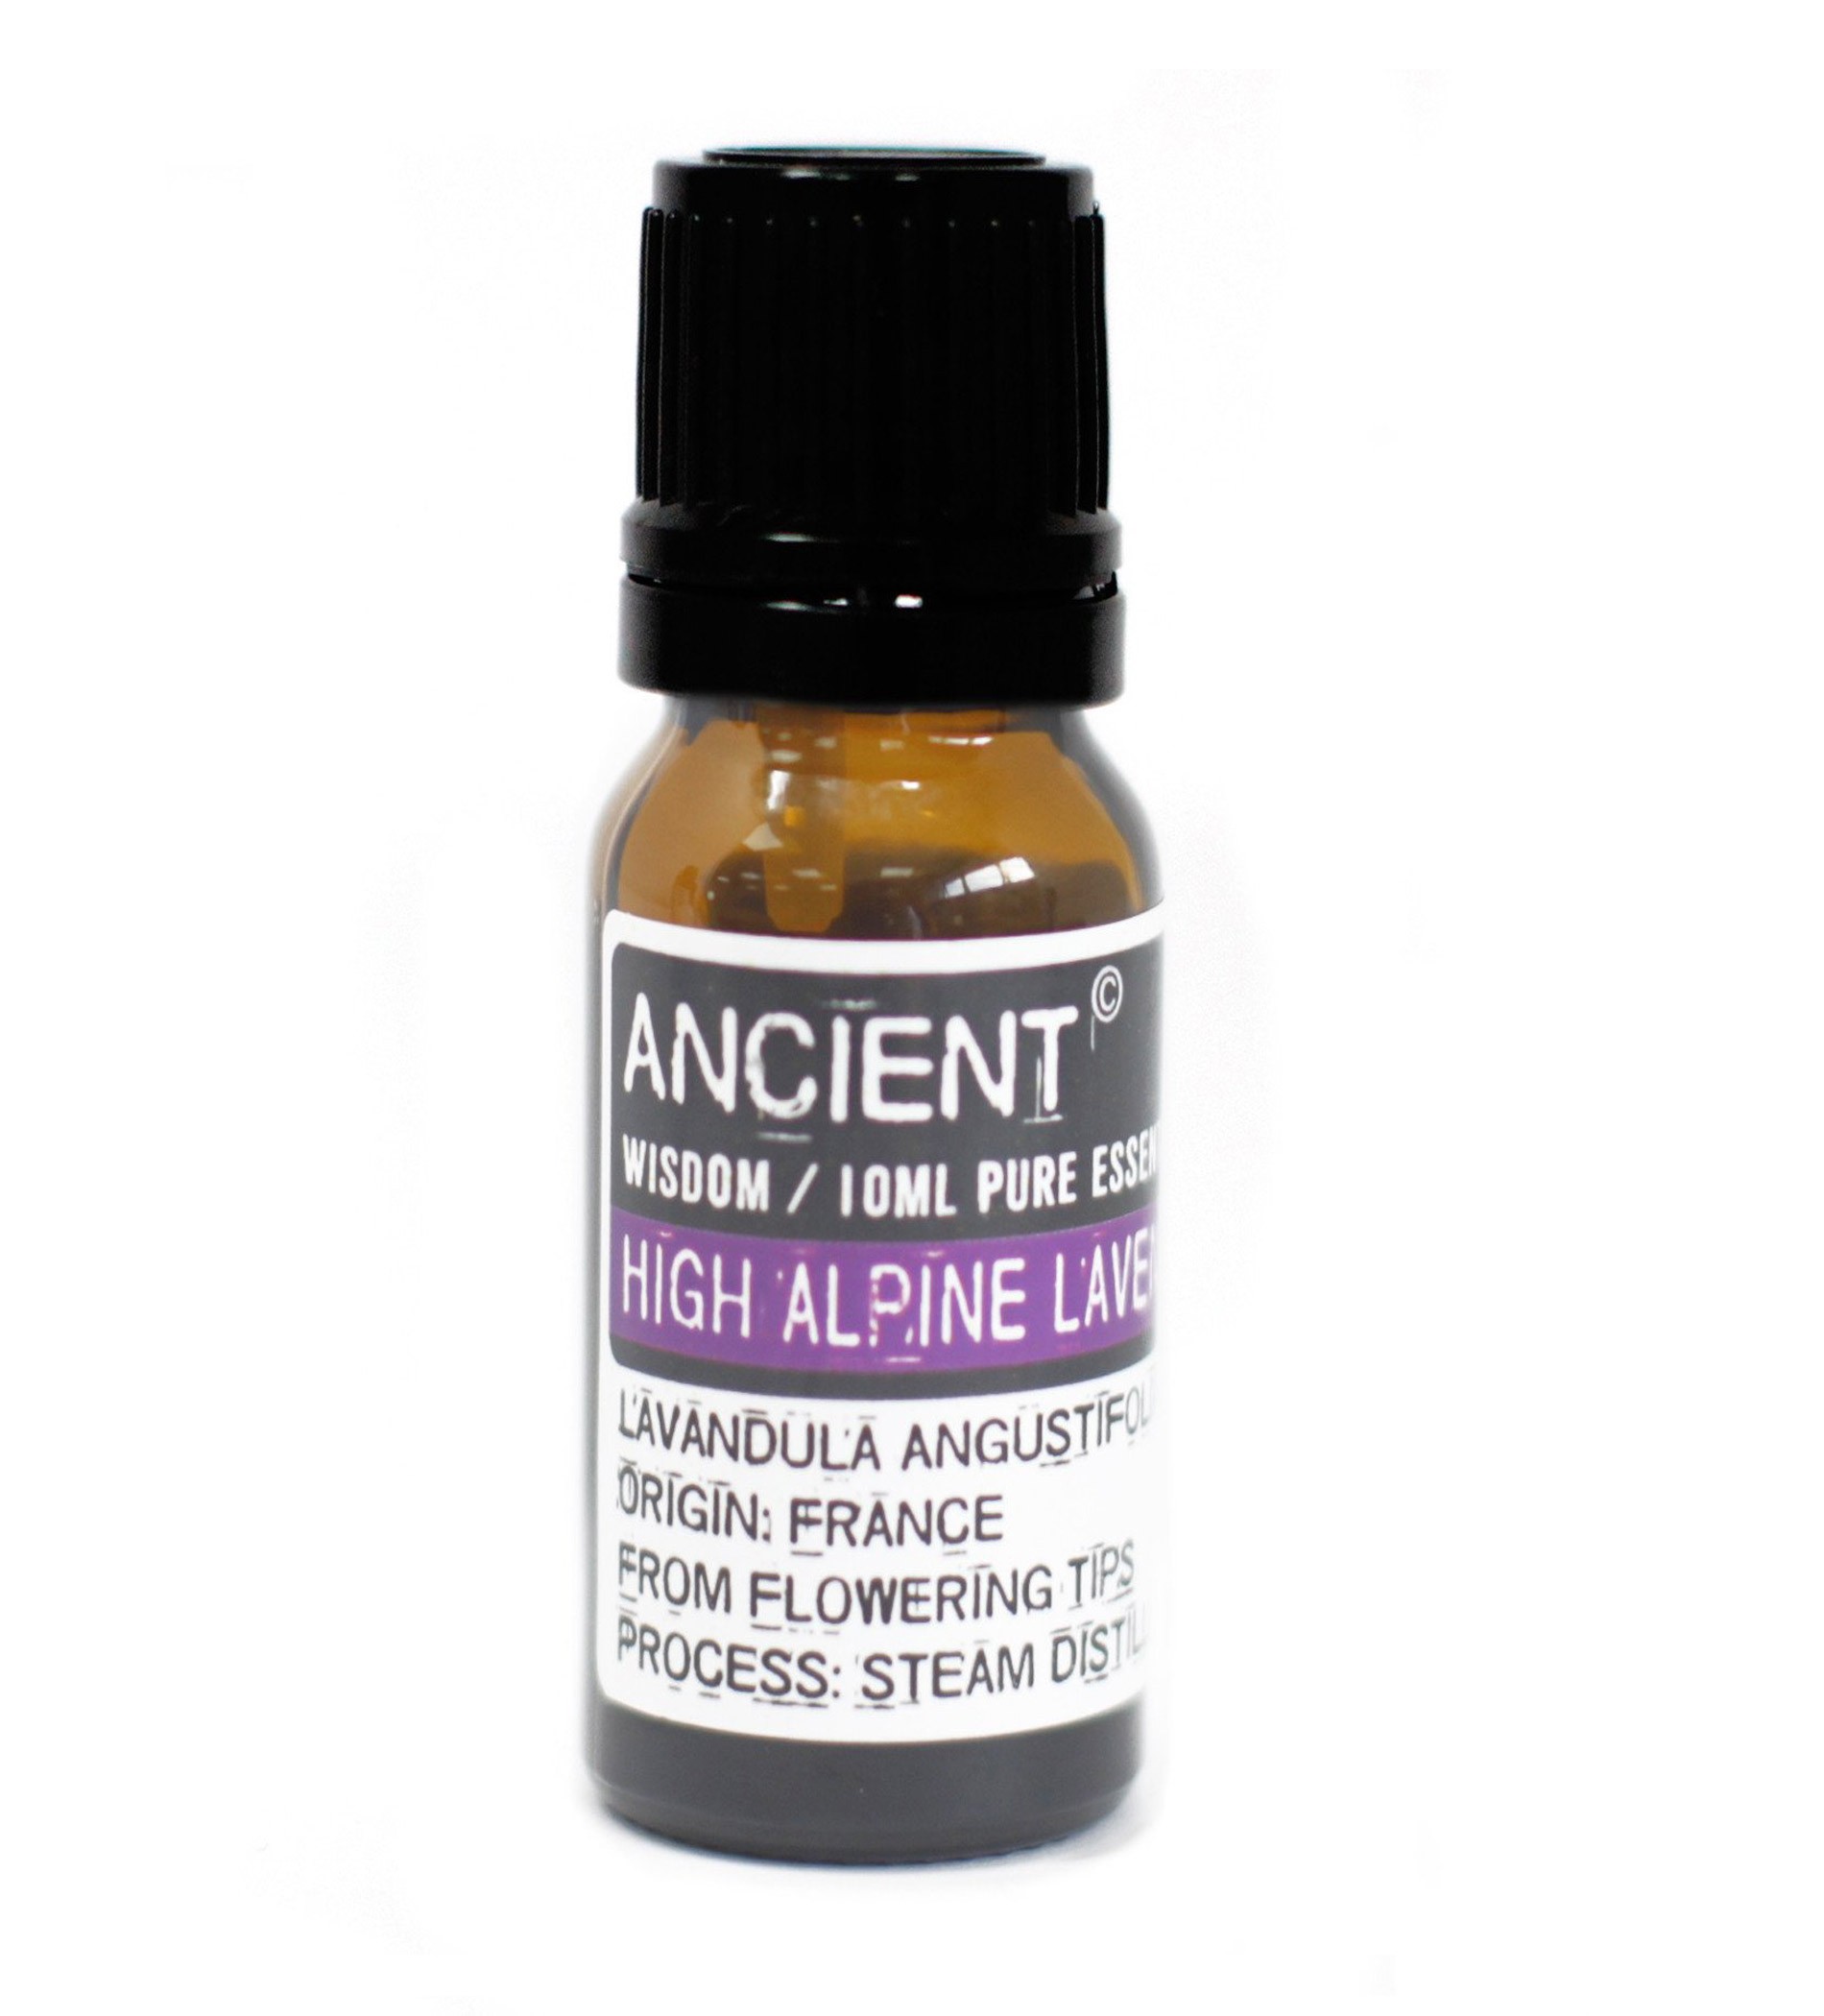 Ancient Wisdom Pure Essential Oils -HighAlpineLavender  